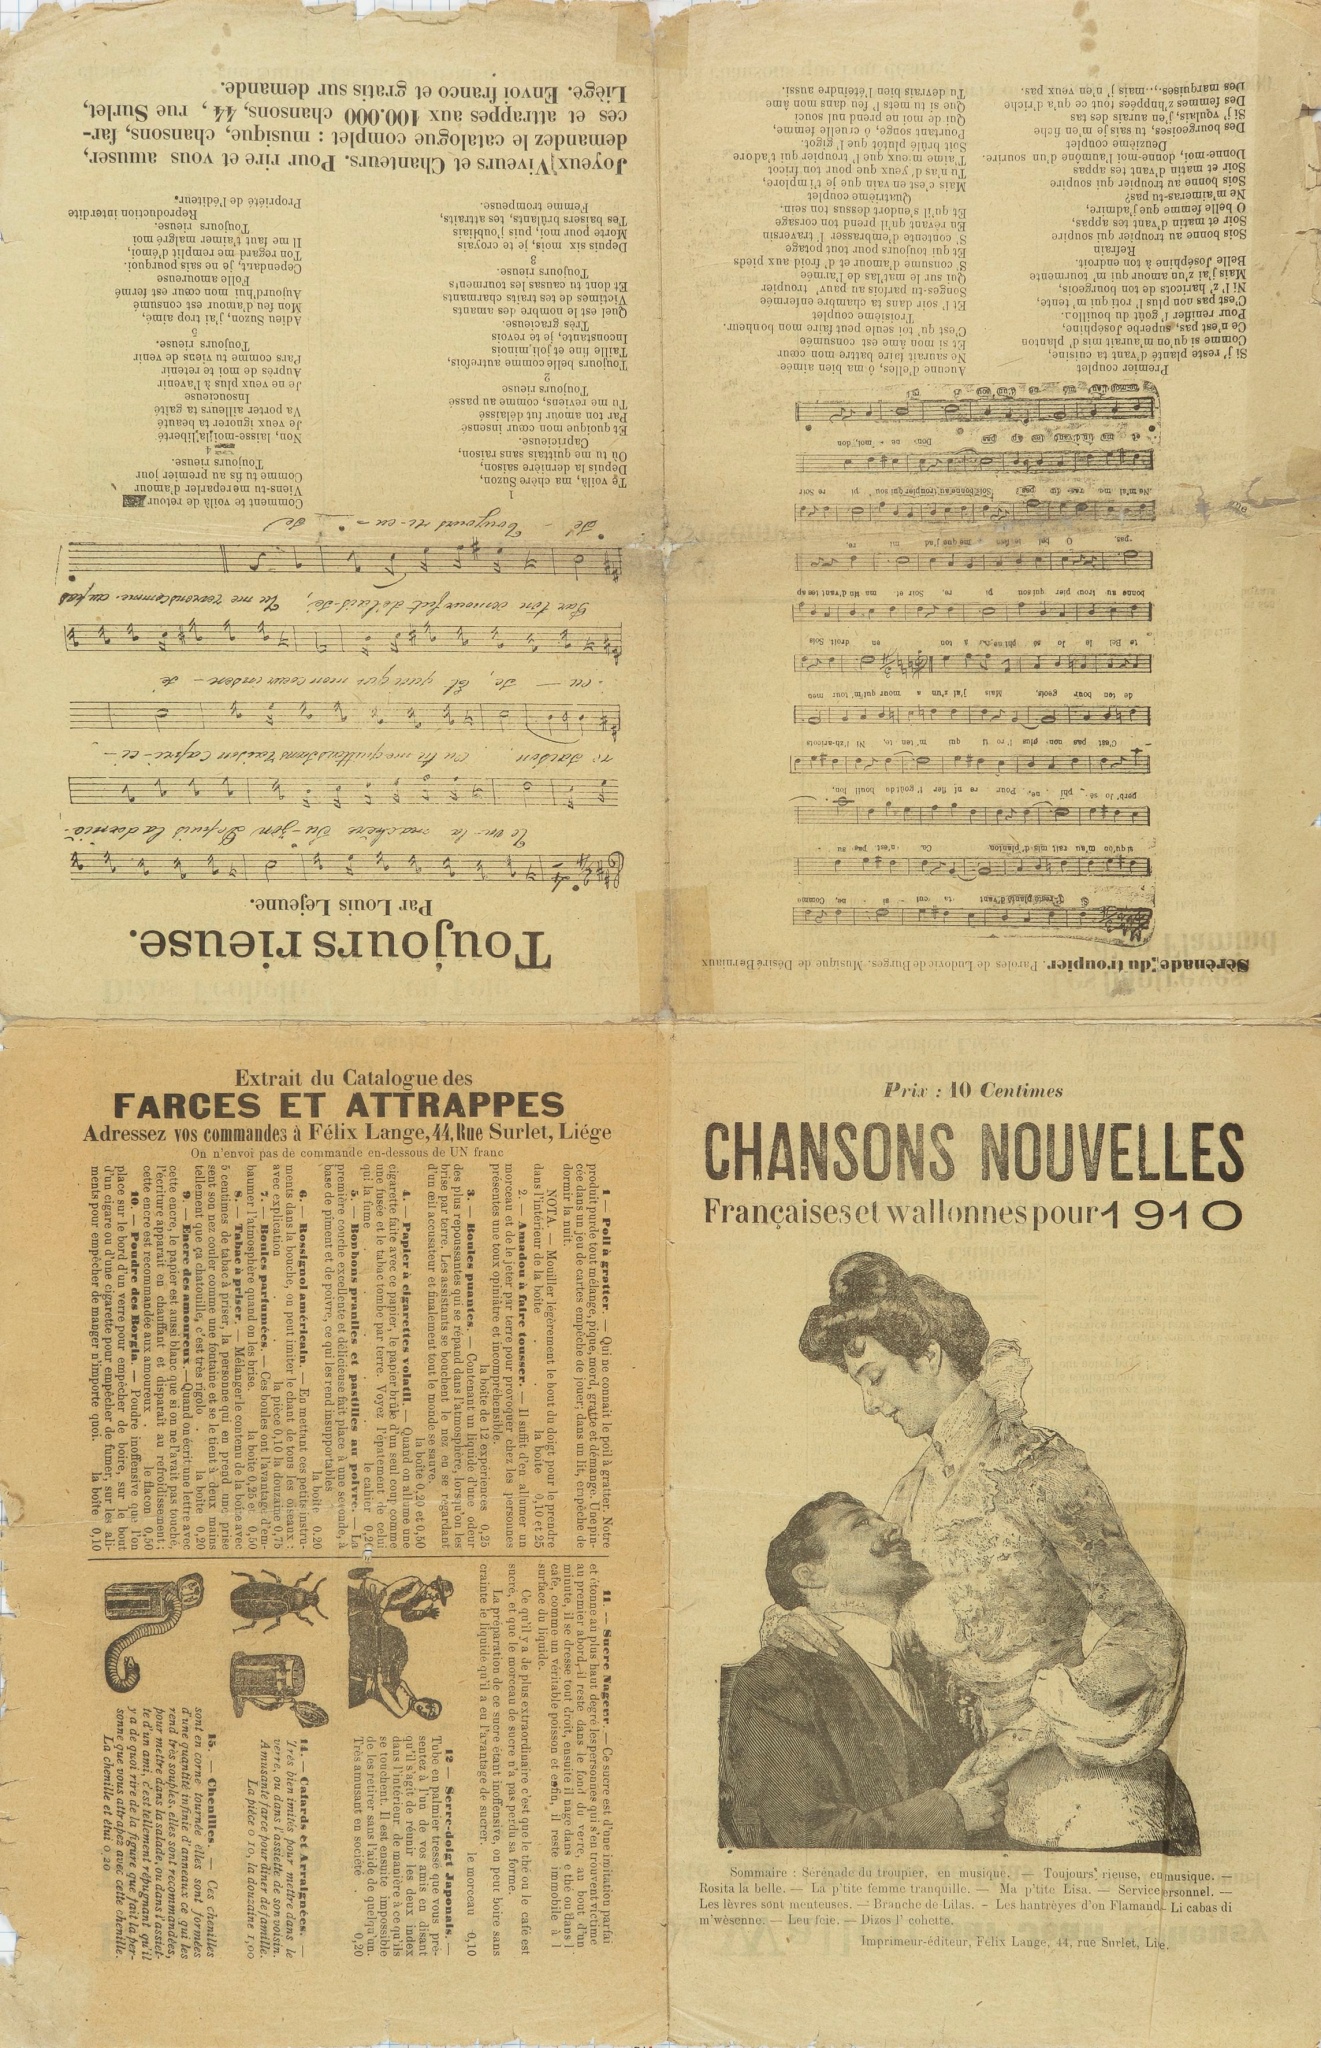 Chansons nouvelles françaises et wallonnes pour 1910